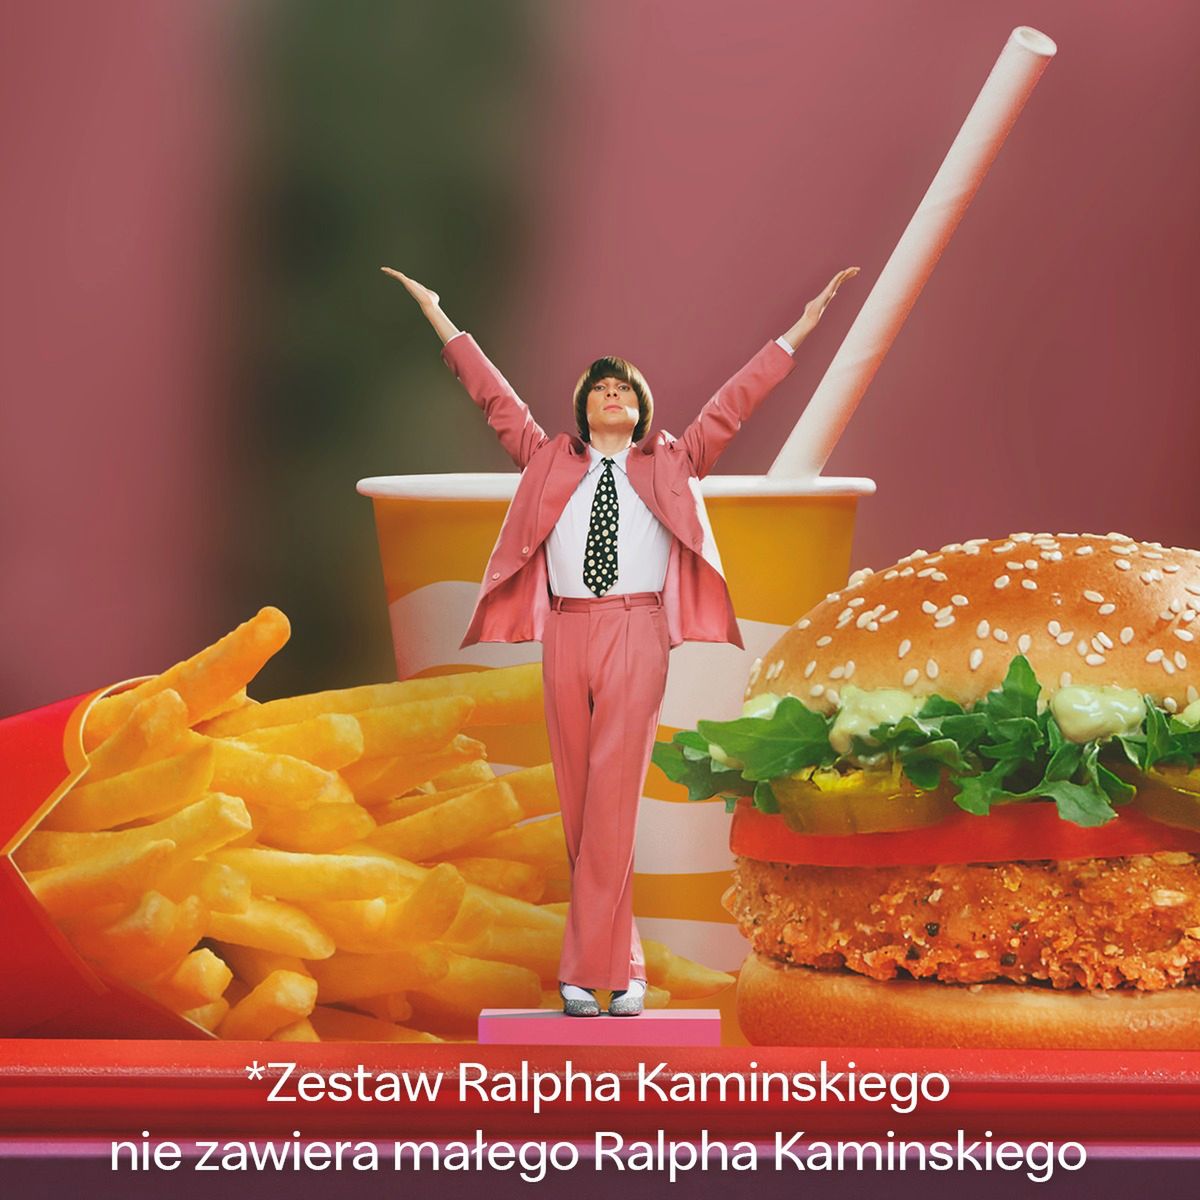 Zestaw Ralpha Kamińskiego- Pyszności/ źródło: McDonalds